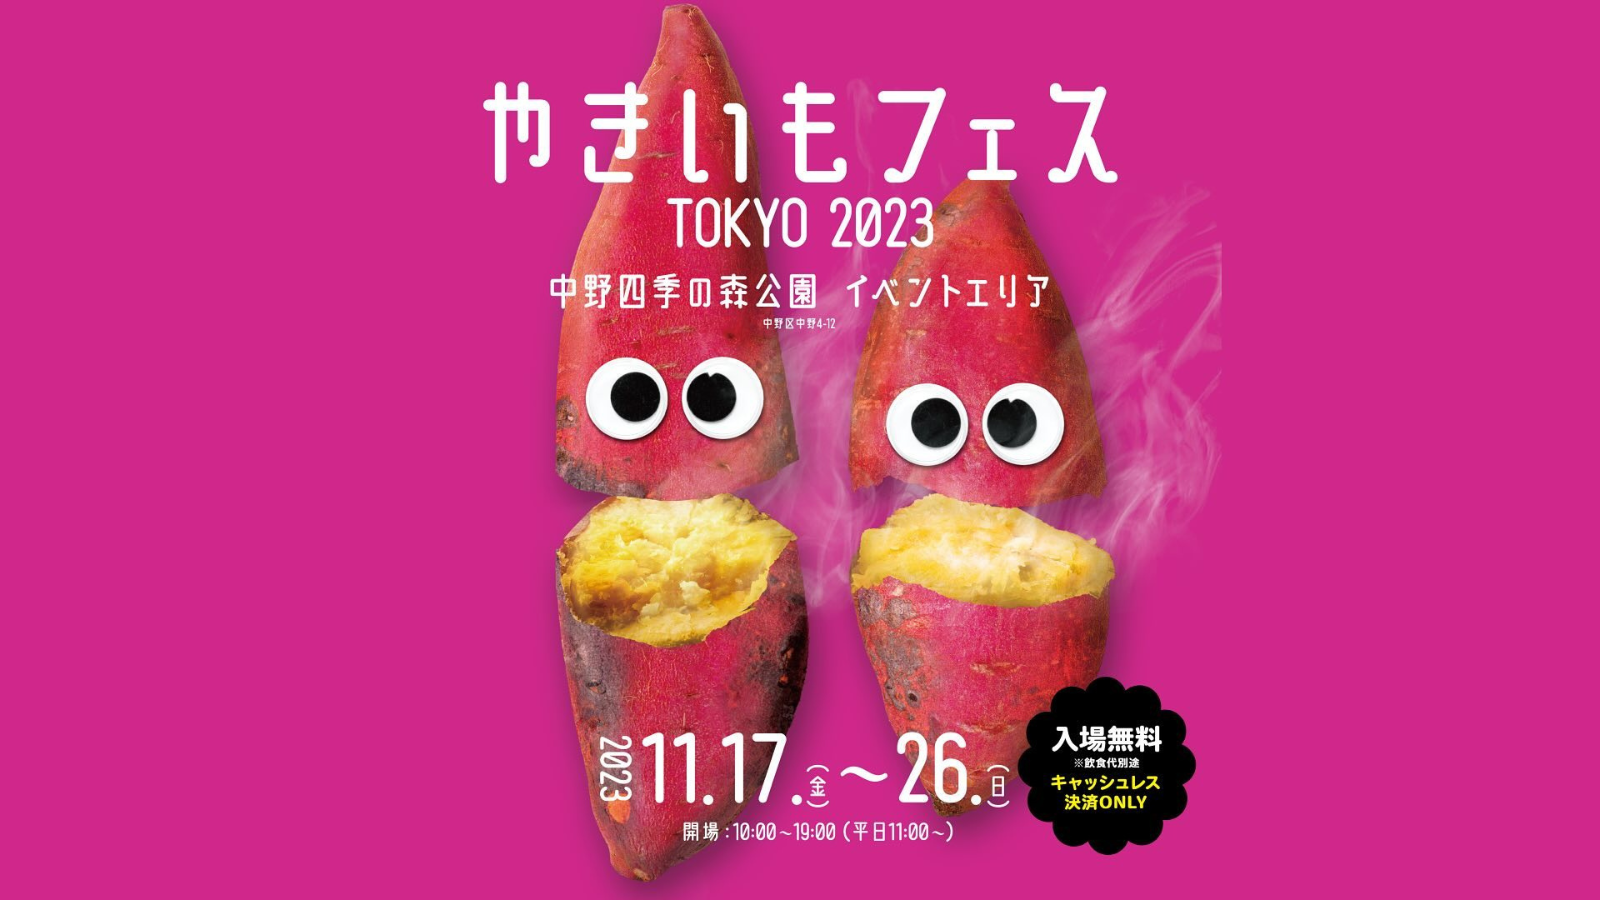 「やきいもフェス TOKYO 2023」の会場施工をお手伝いさせていただきました！